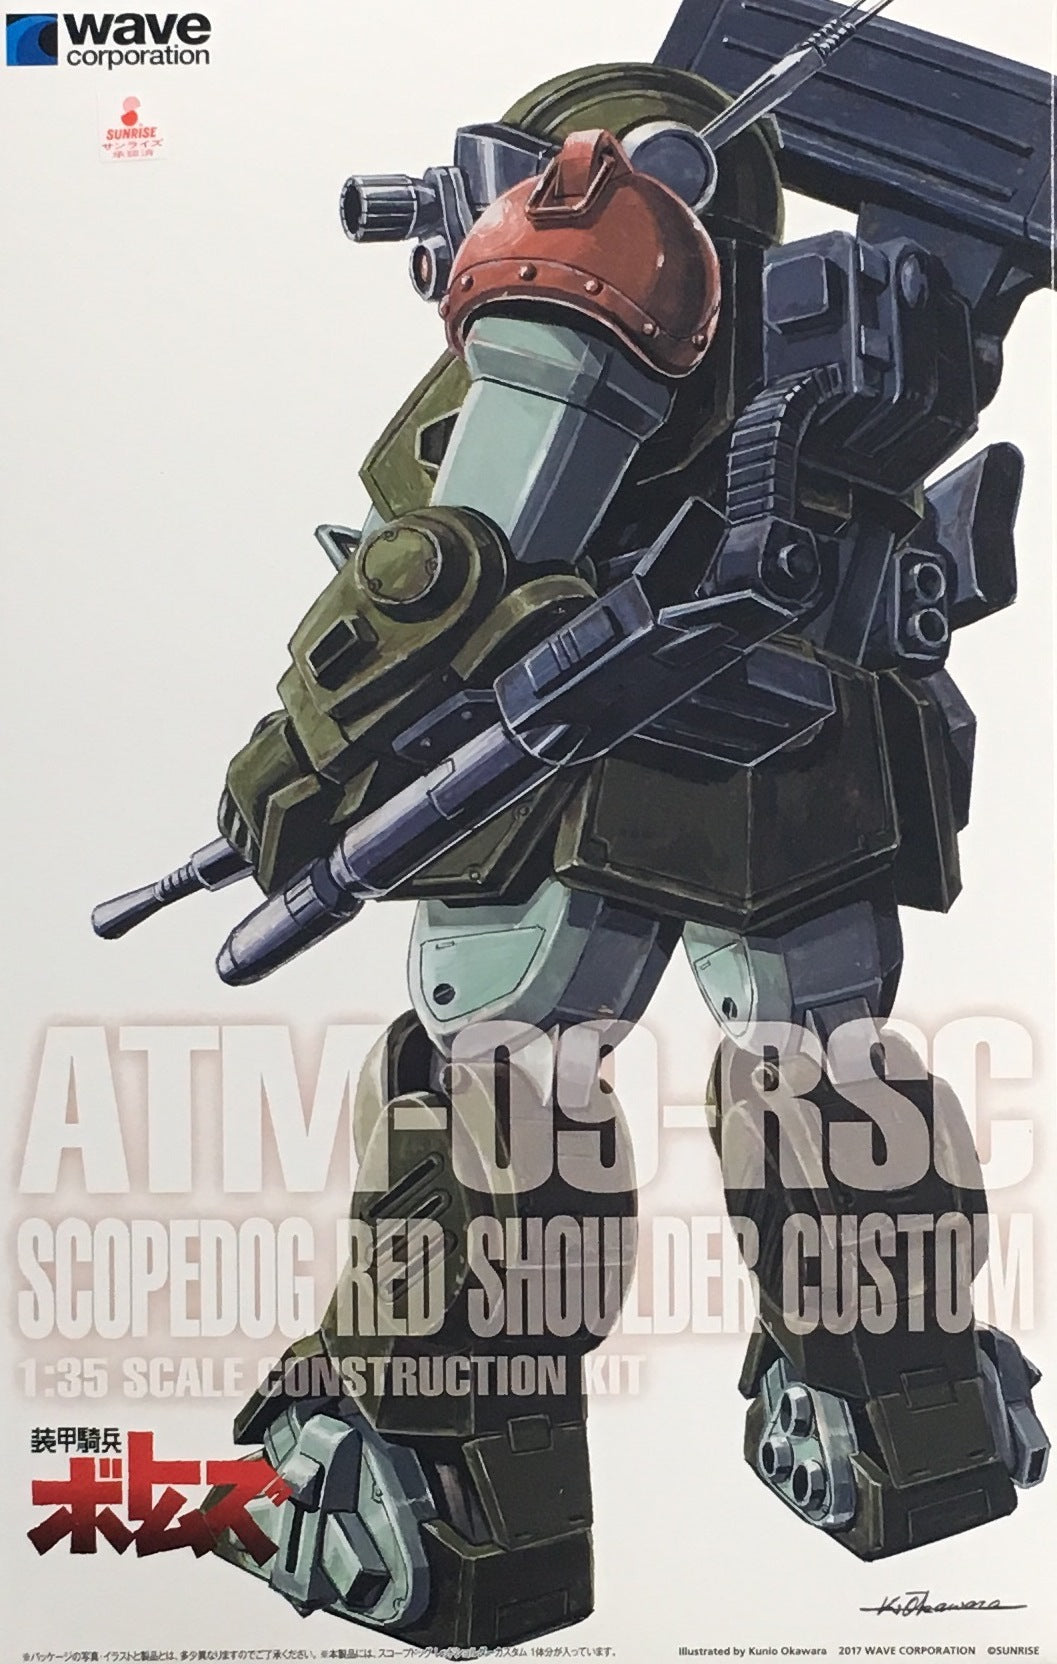 Scopedog Red Shoulder Custom [ST Version]